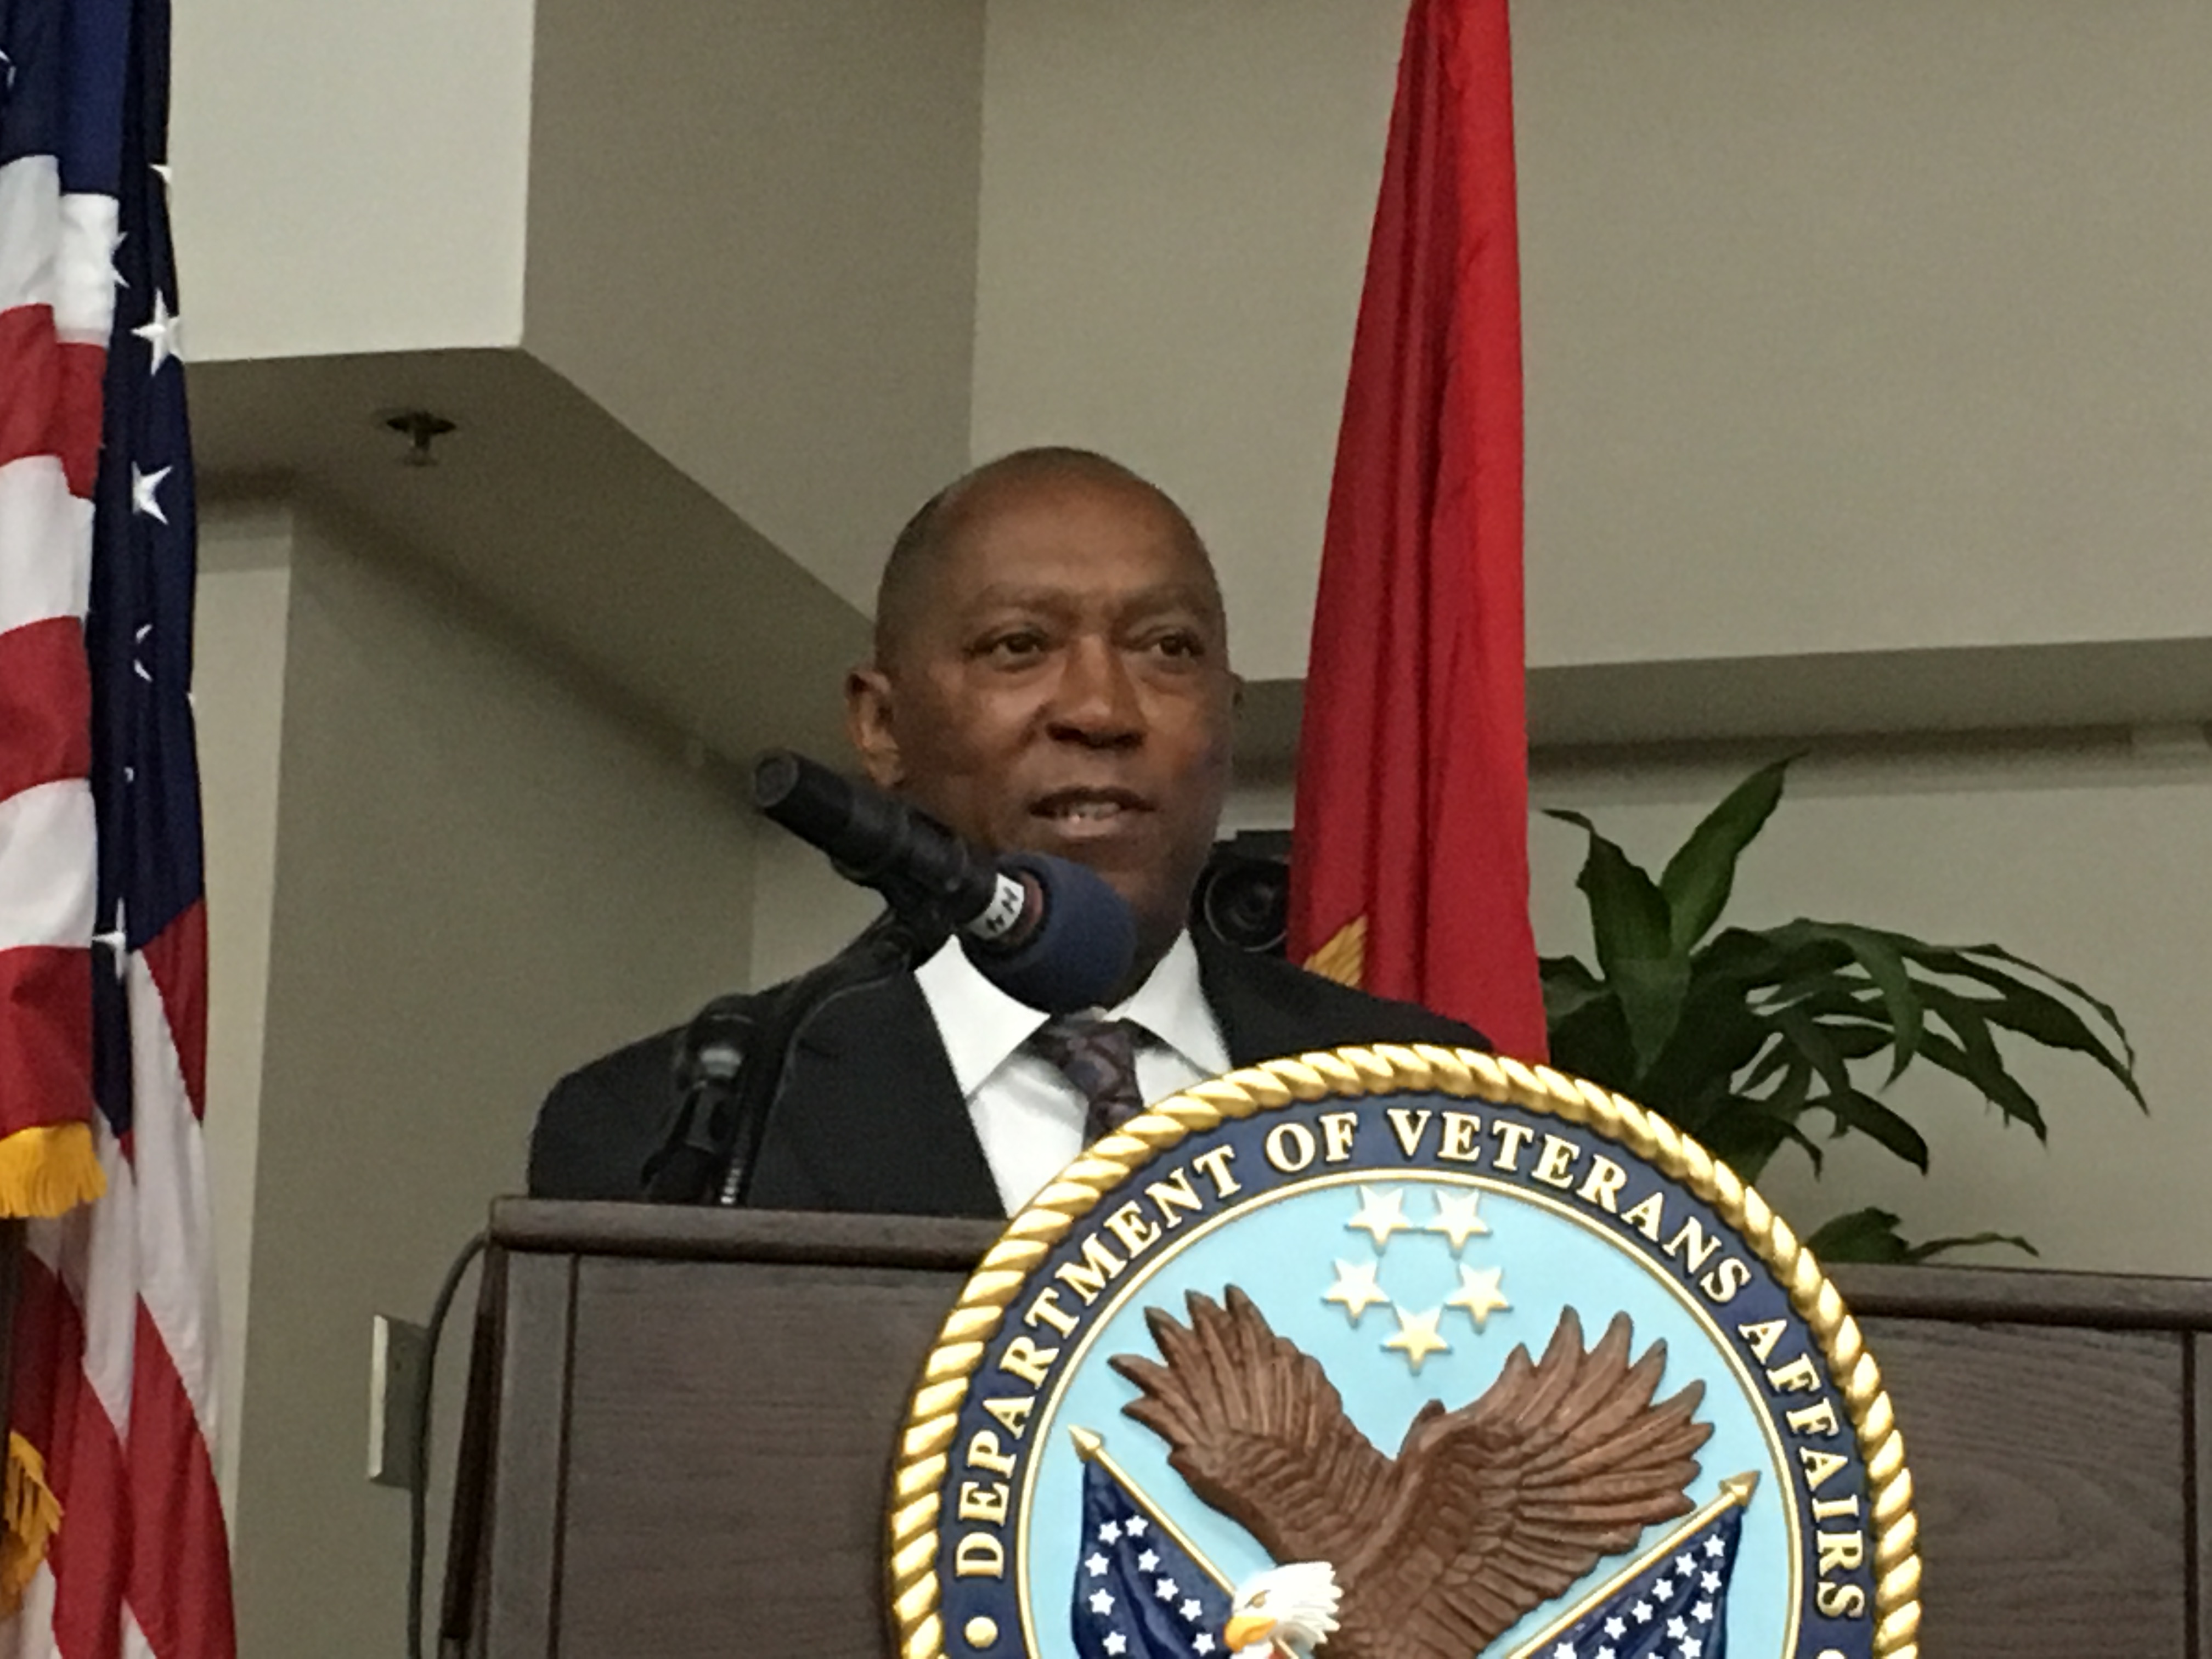 Houston Mayor Sylvester Turner speaks to veterans at VA Medical Center